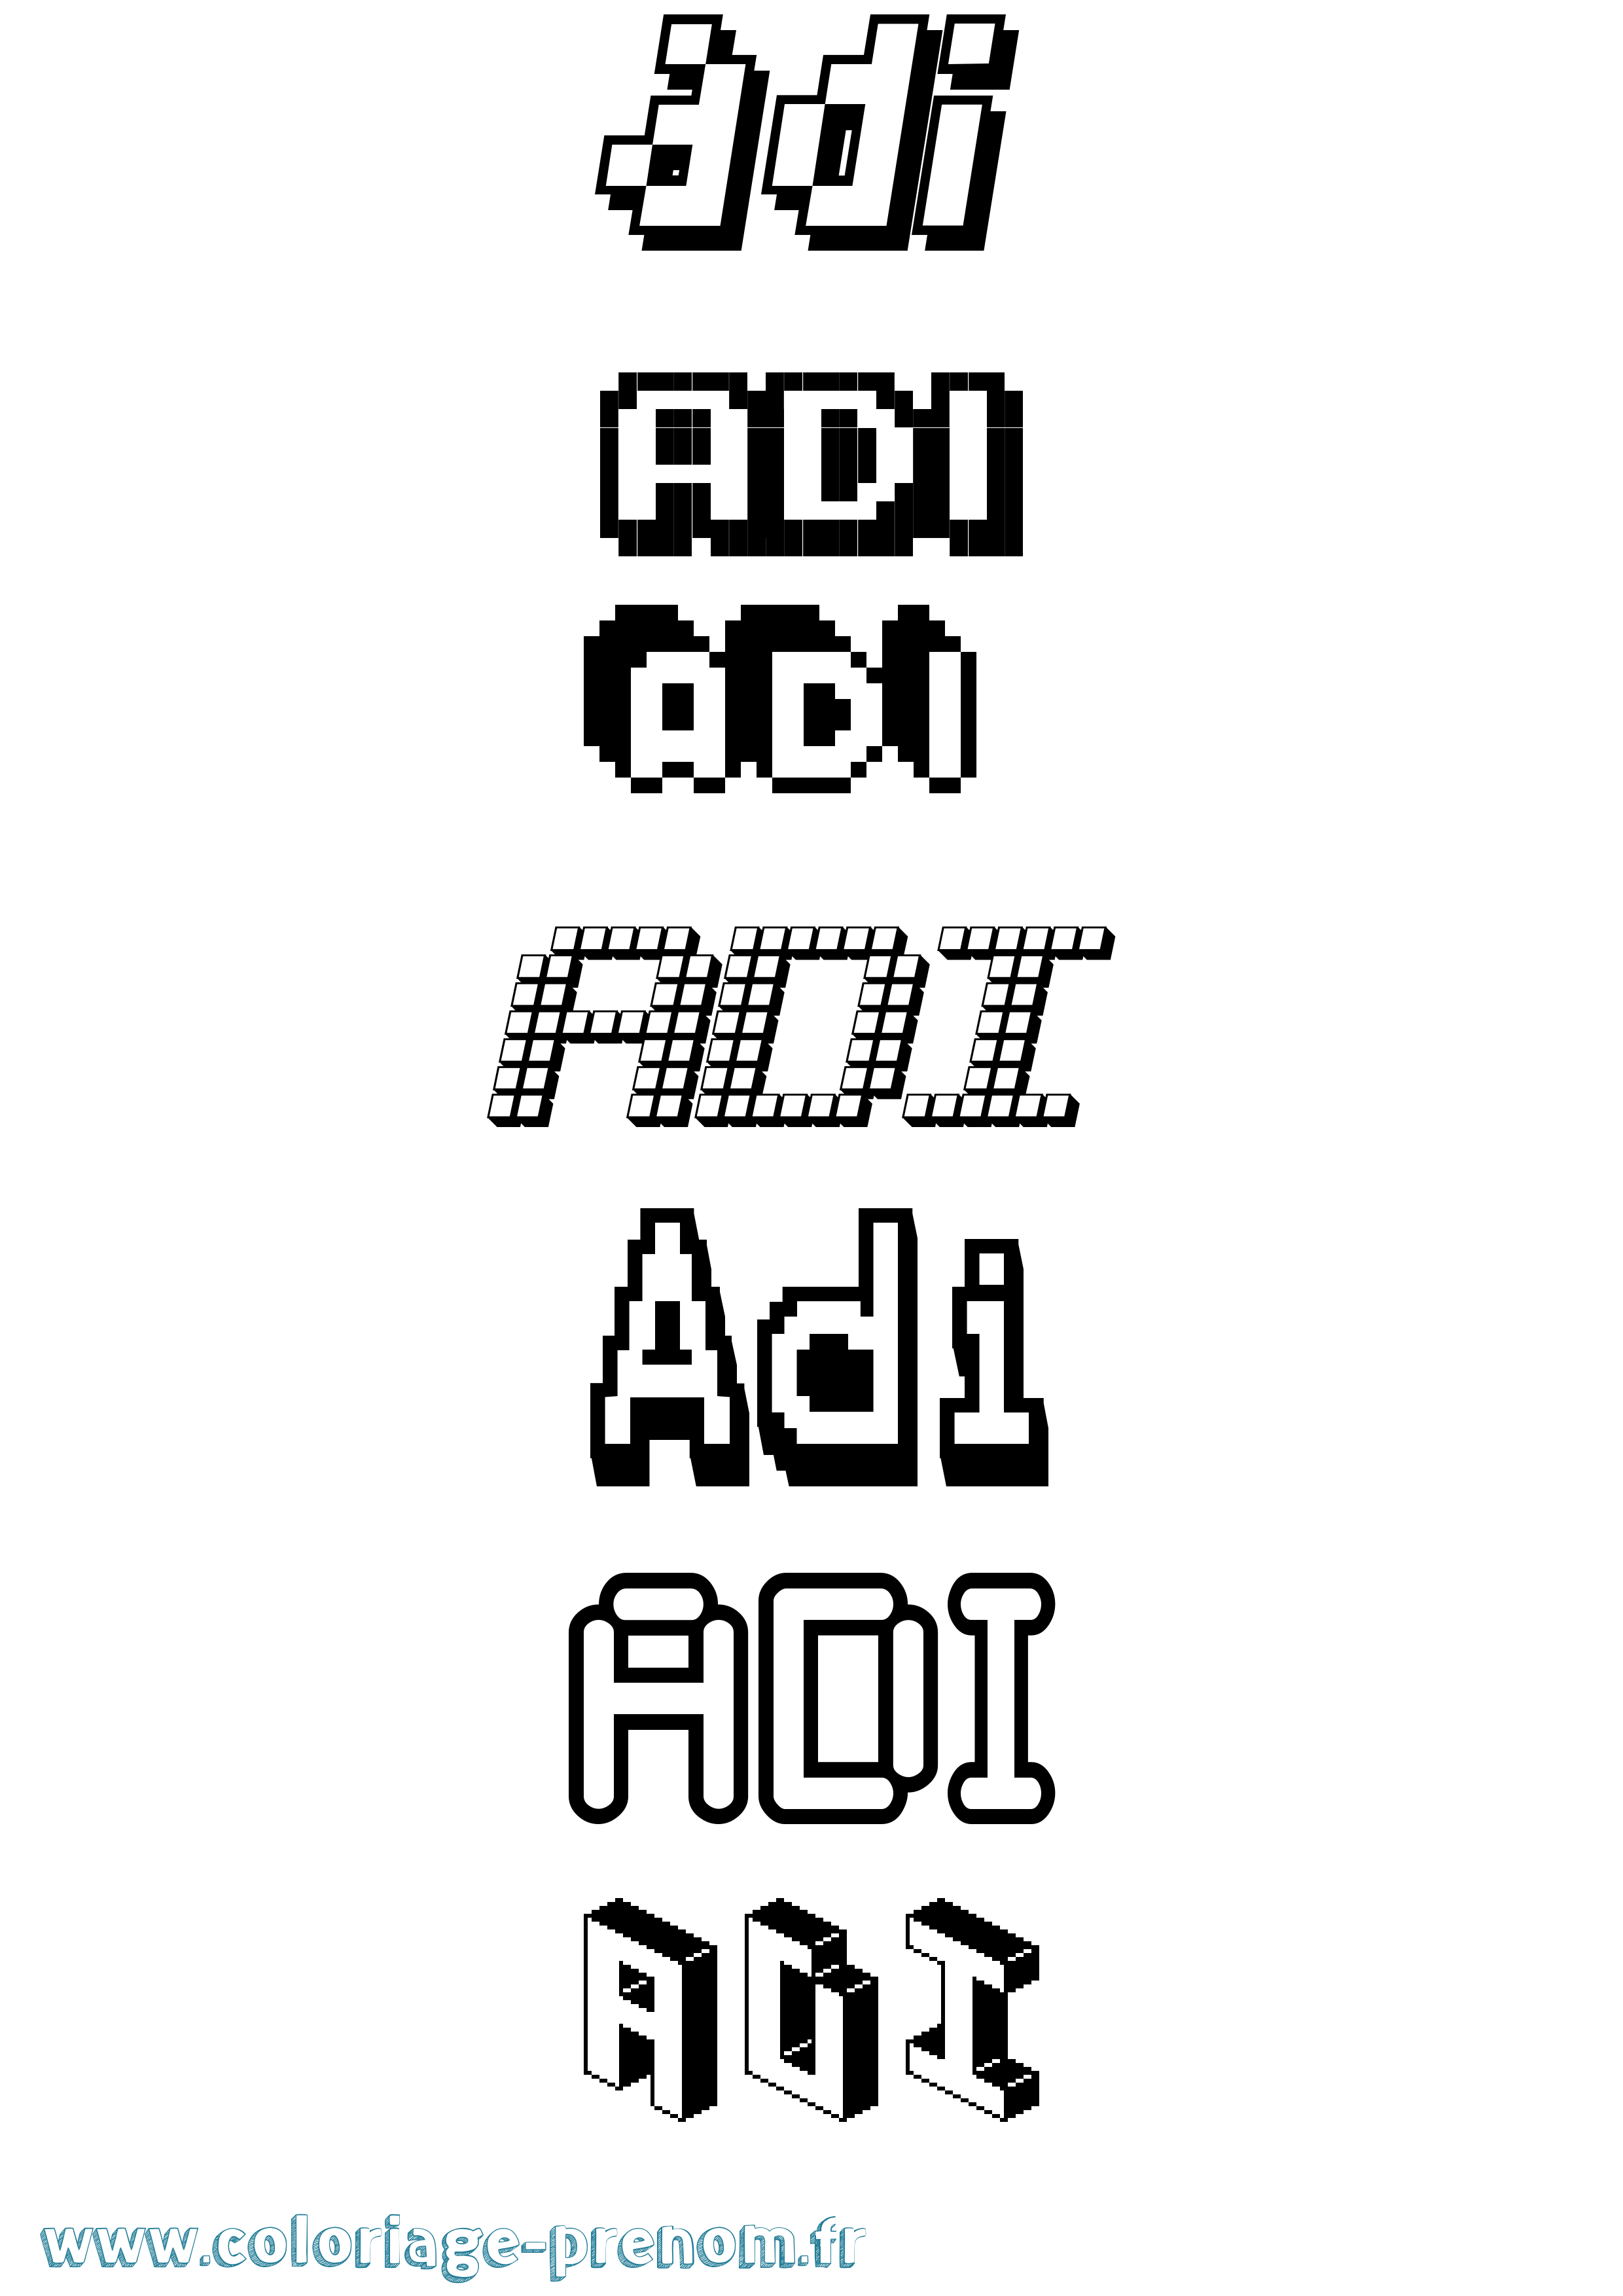 Coloriage prénom Adi Pixel